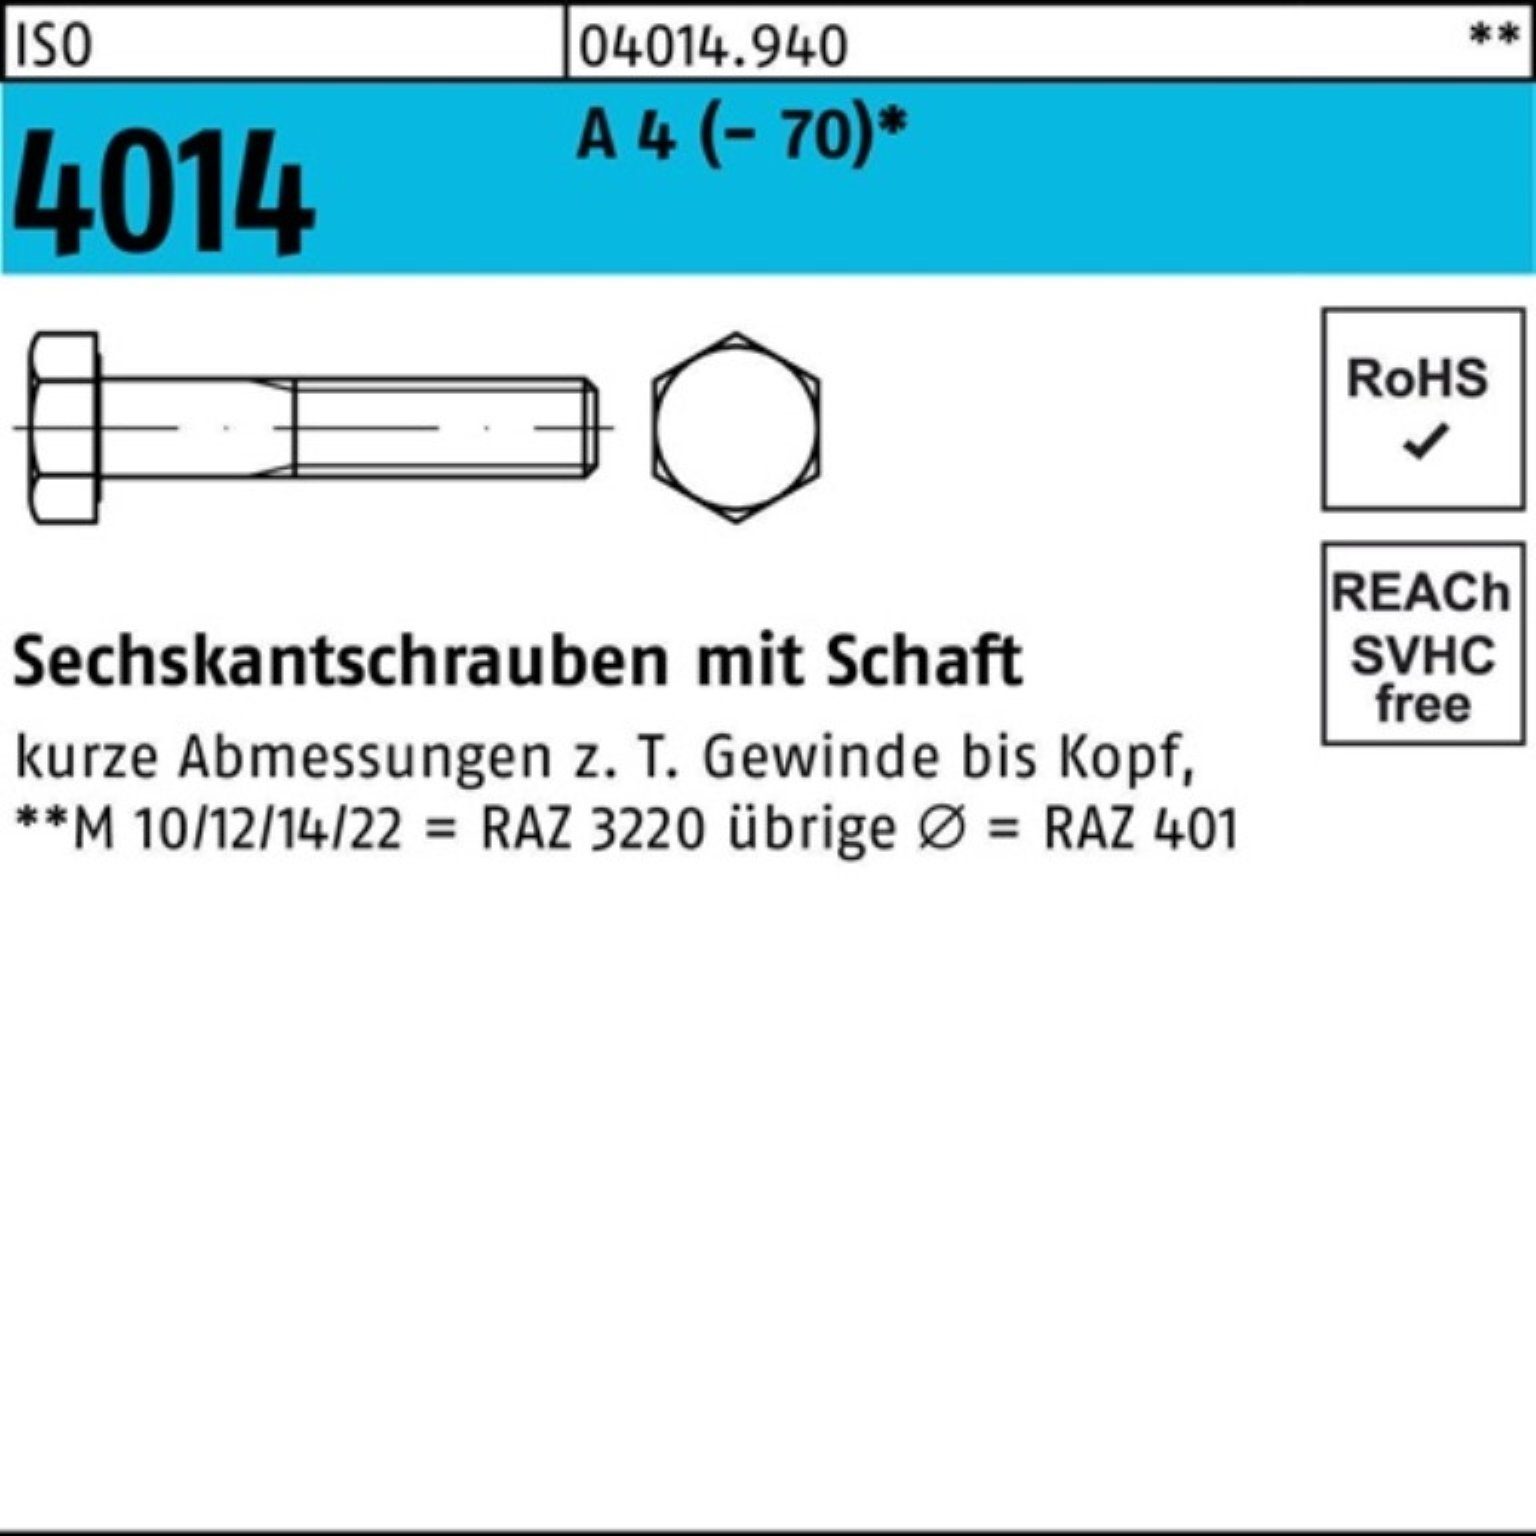 Bufab Sechskantschraube 100er Pack Sechskantschraube ISO 4014 Schaft M10x 75 A 4 (70) 50 St